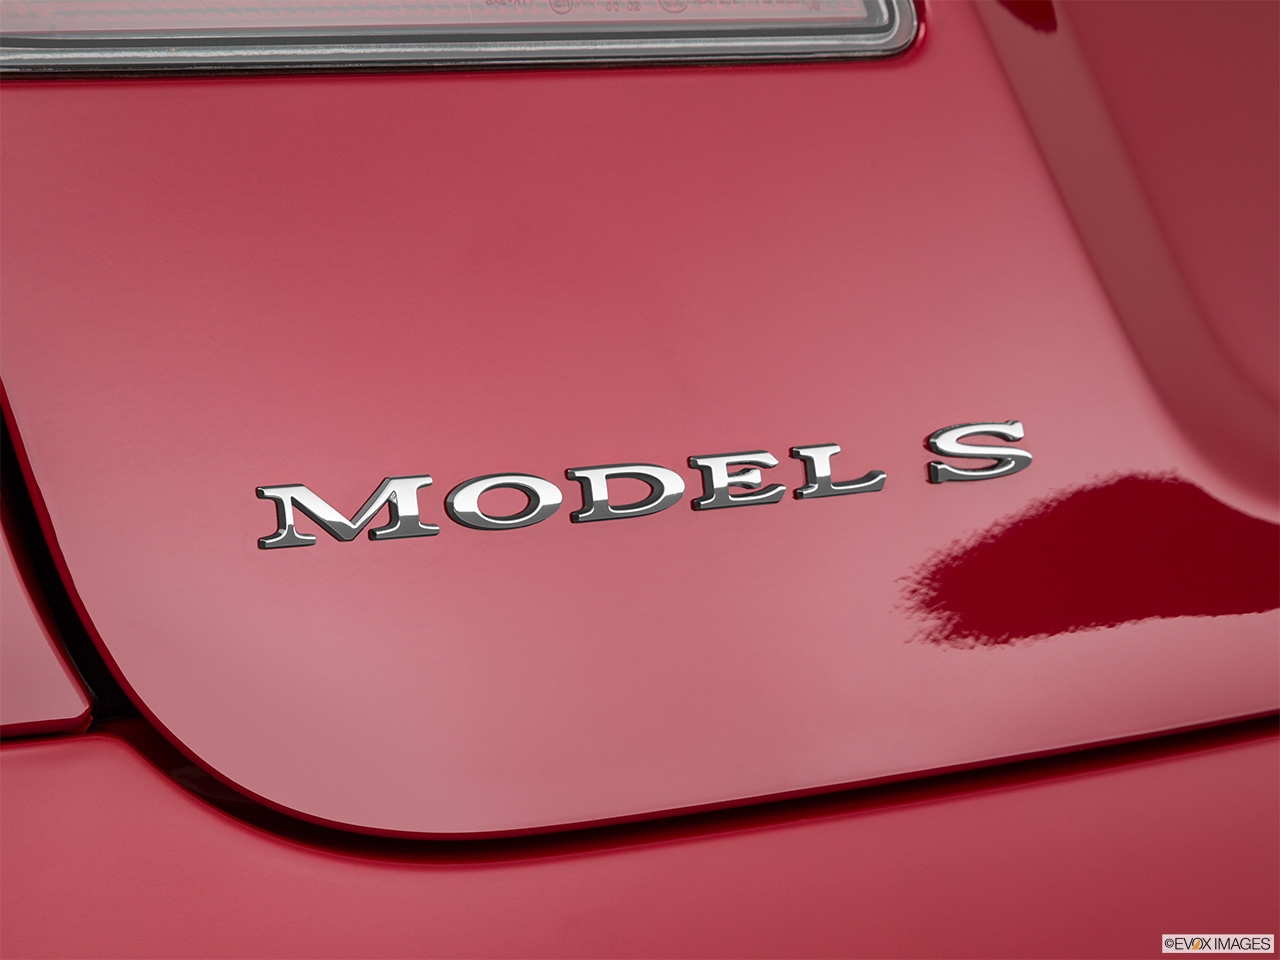 2019 Tesla Model S P100D Rear model badge/emblem 